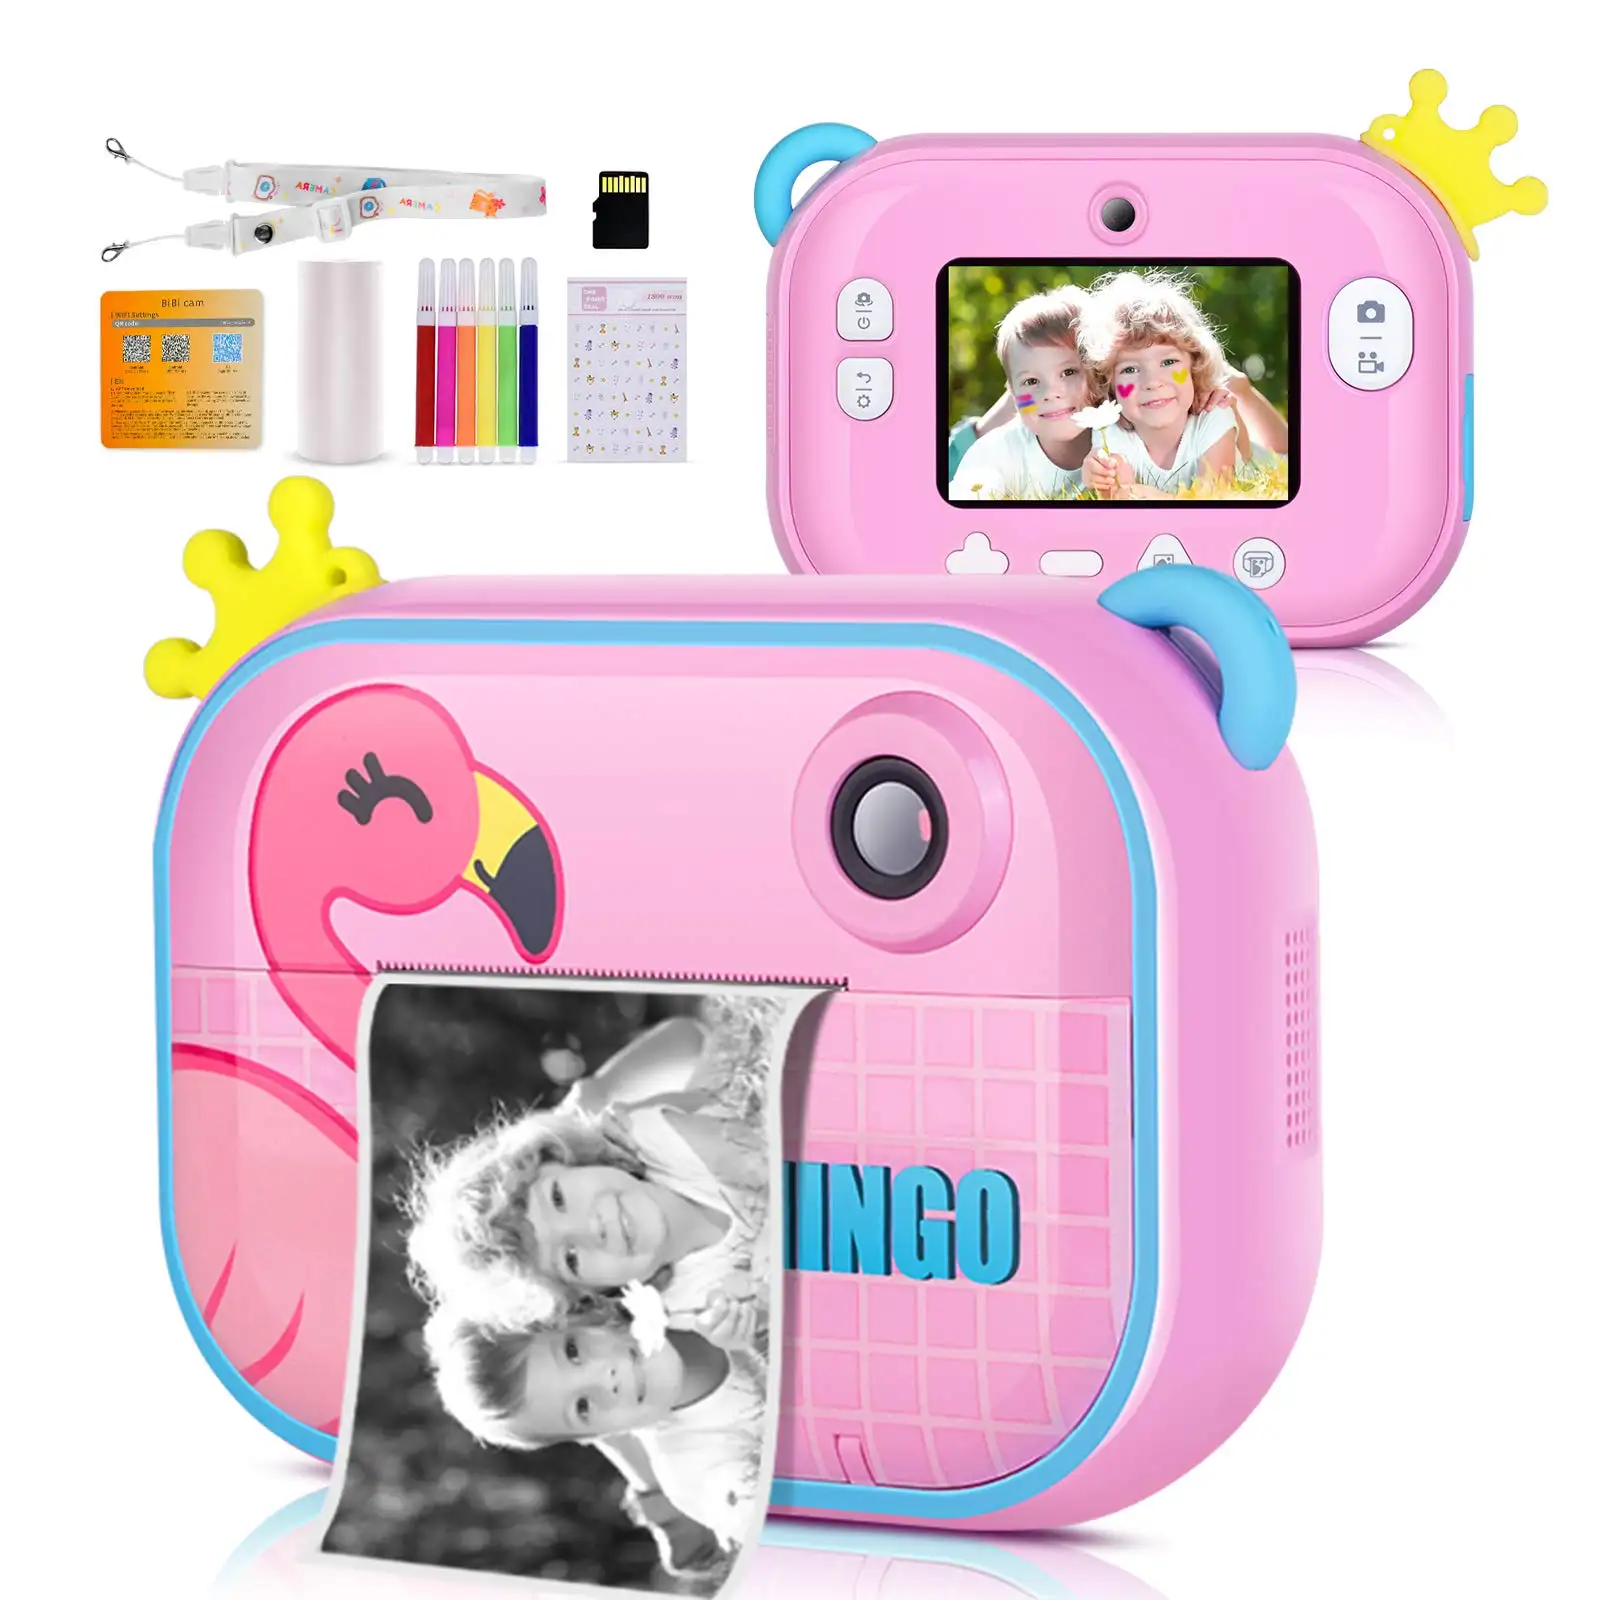 Fotocamera per bambini stampa istantanea stampante per carta termica per bambini Mini fotocamera digitale giocattolo